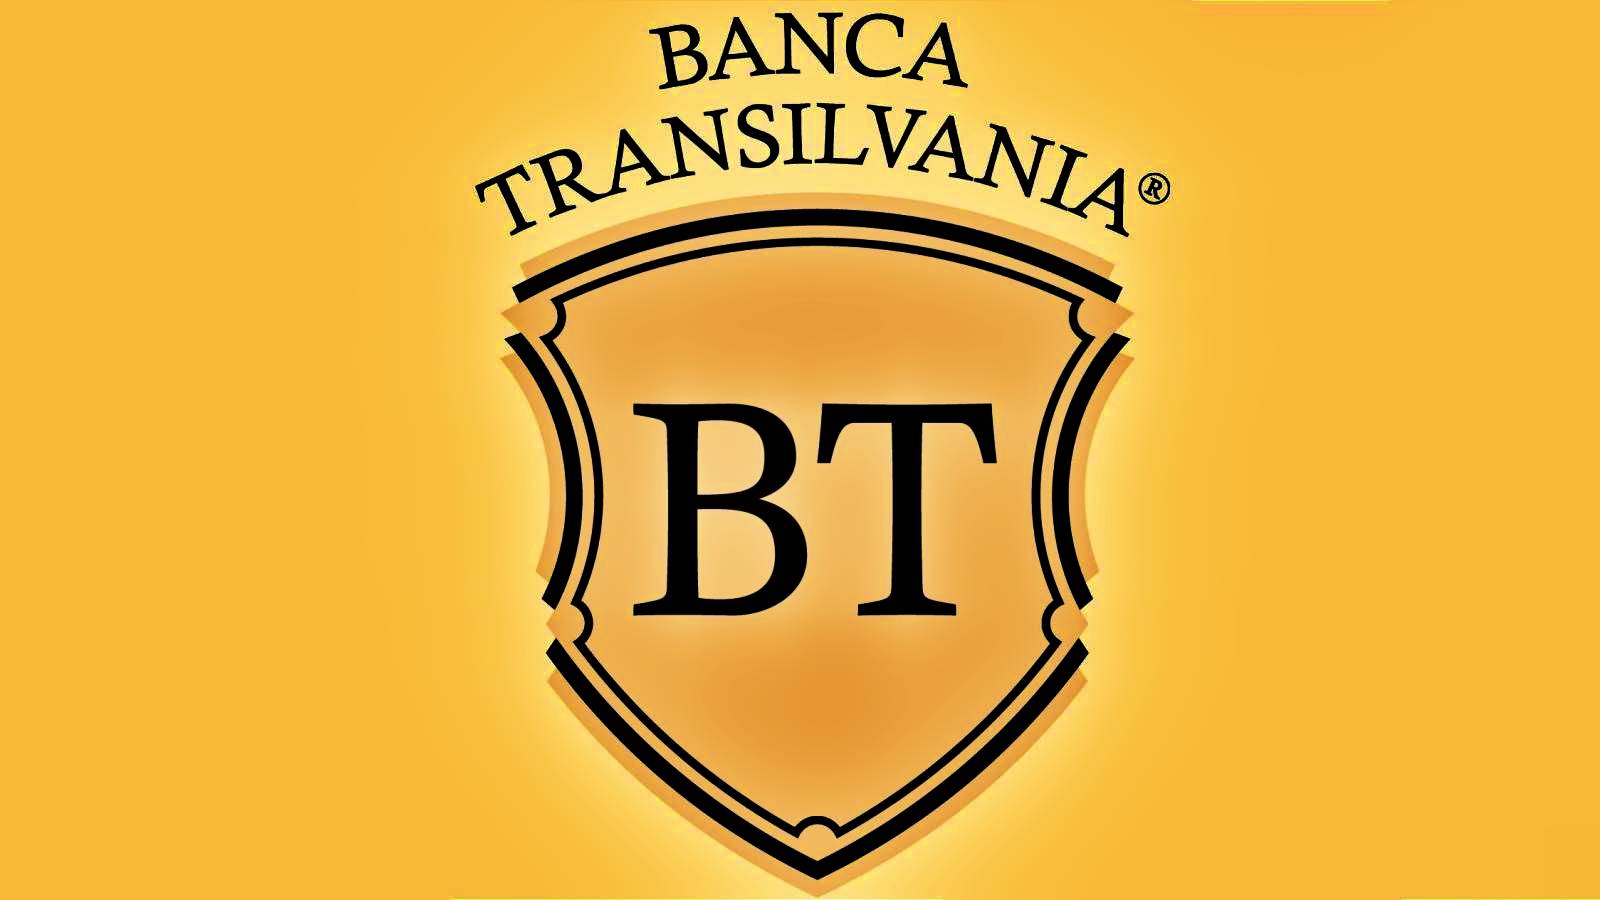 Klienci BANCA Transilvania w Rumunii muszą zachować OSTROŻNOŚĆ